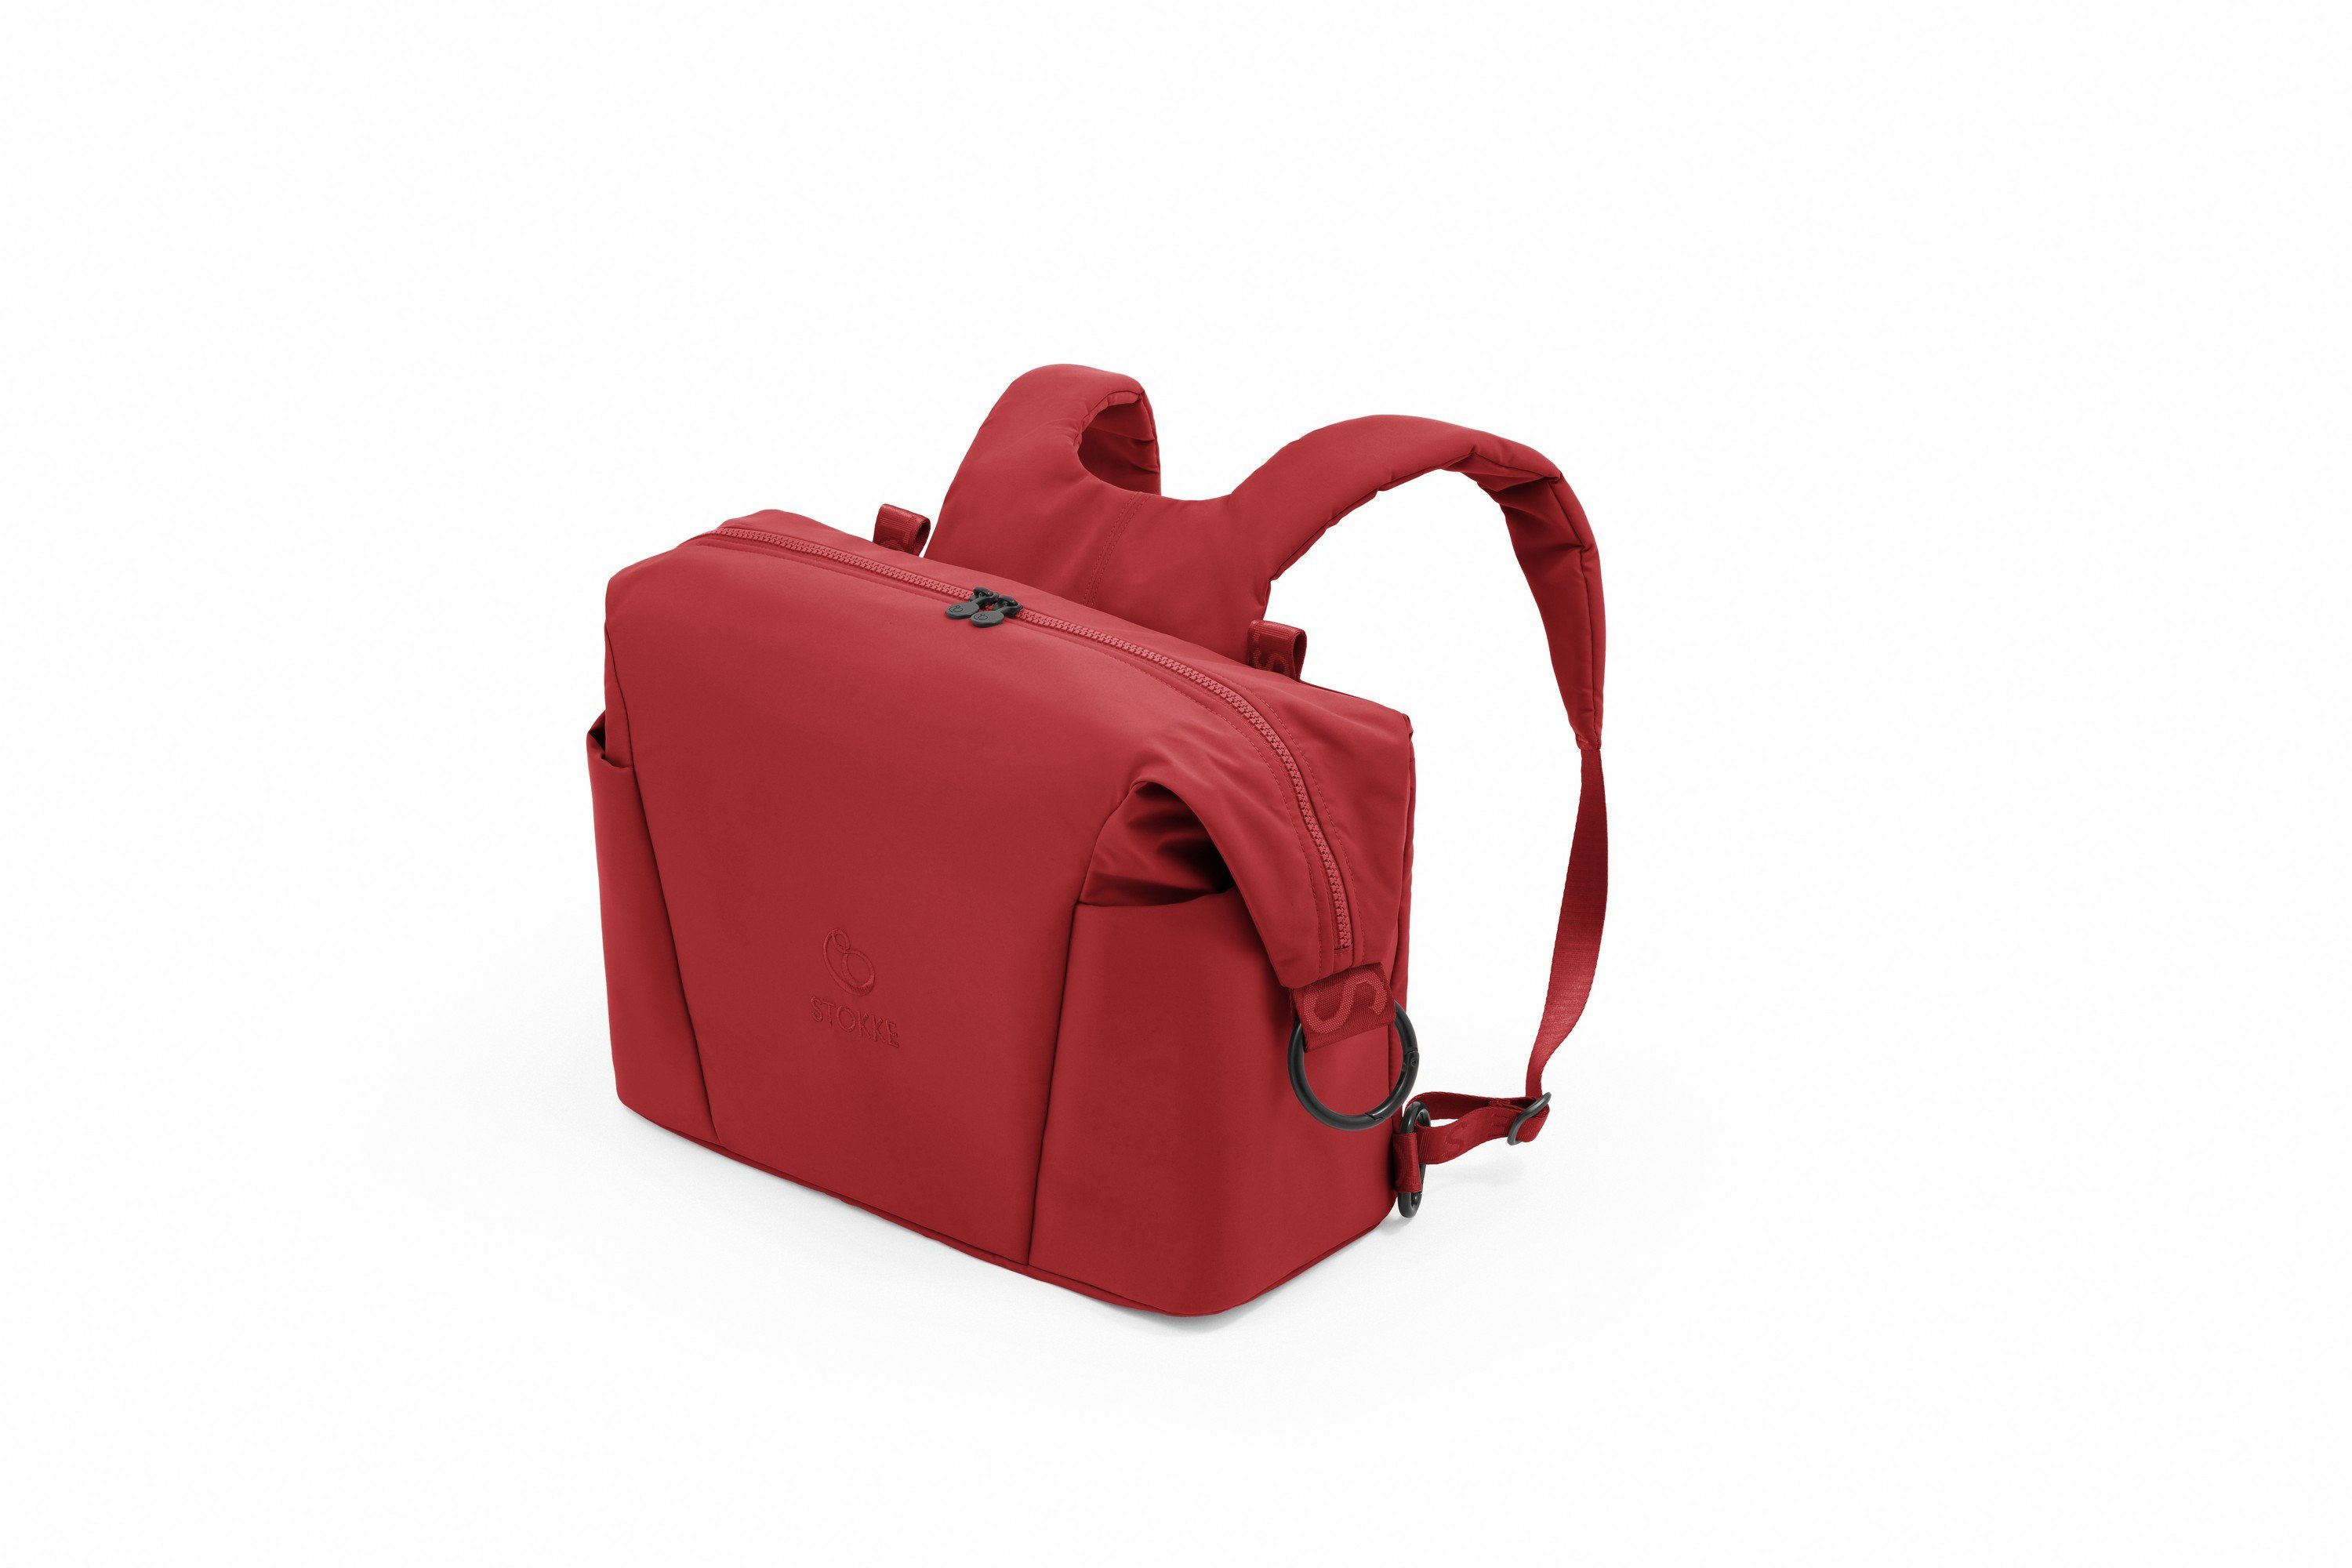 Stokke Wickeltasche Tasche mit zwei Trageoptionen - auch passend für den Xplory X Ruby Red